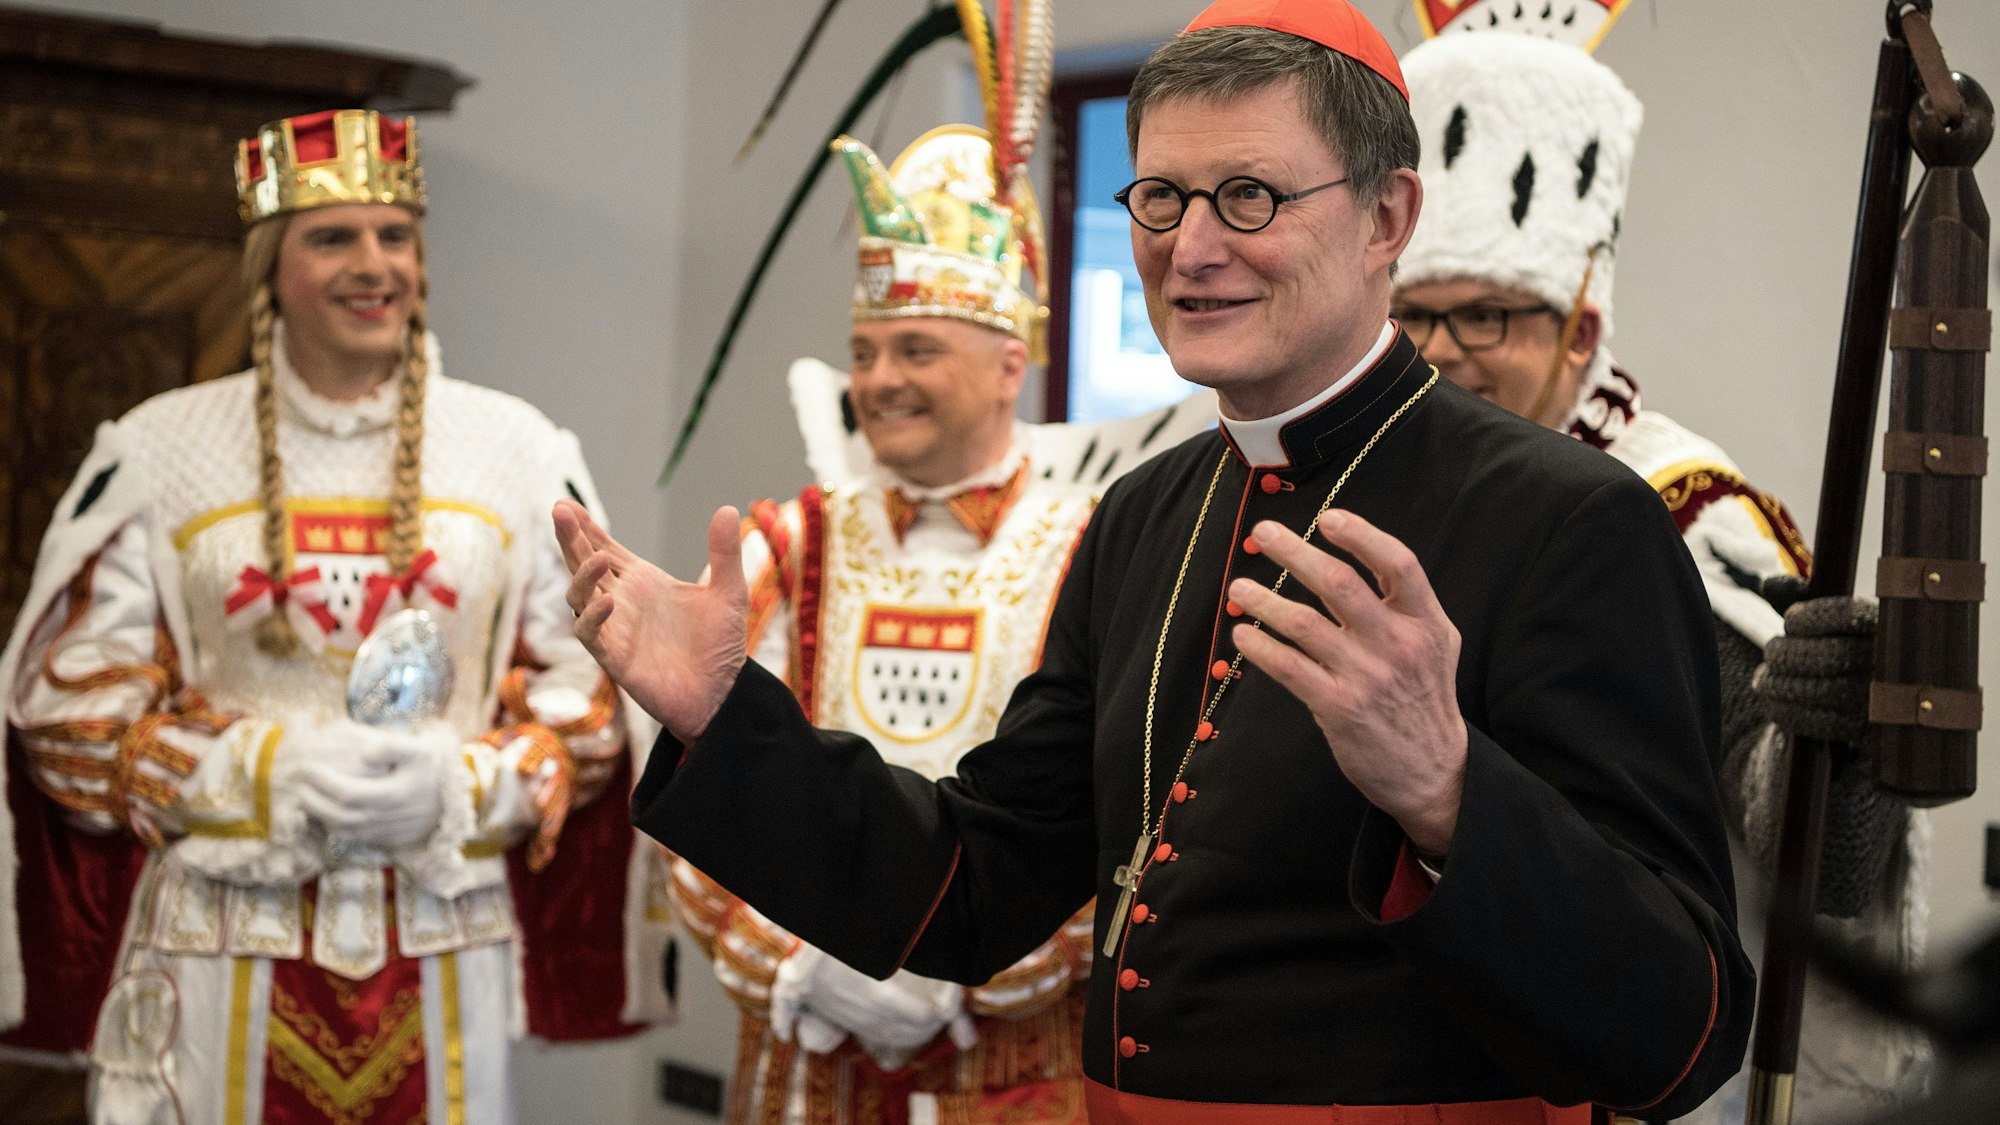 Erzbischof Rainer Maria Kardinal Woelki begrüßt das Kölner Dreigestirn von 2017 mit Prinz Stefan, Jungfrau Stefanie und Bauer Andreas in seiner Residenz.